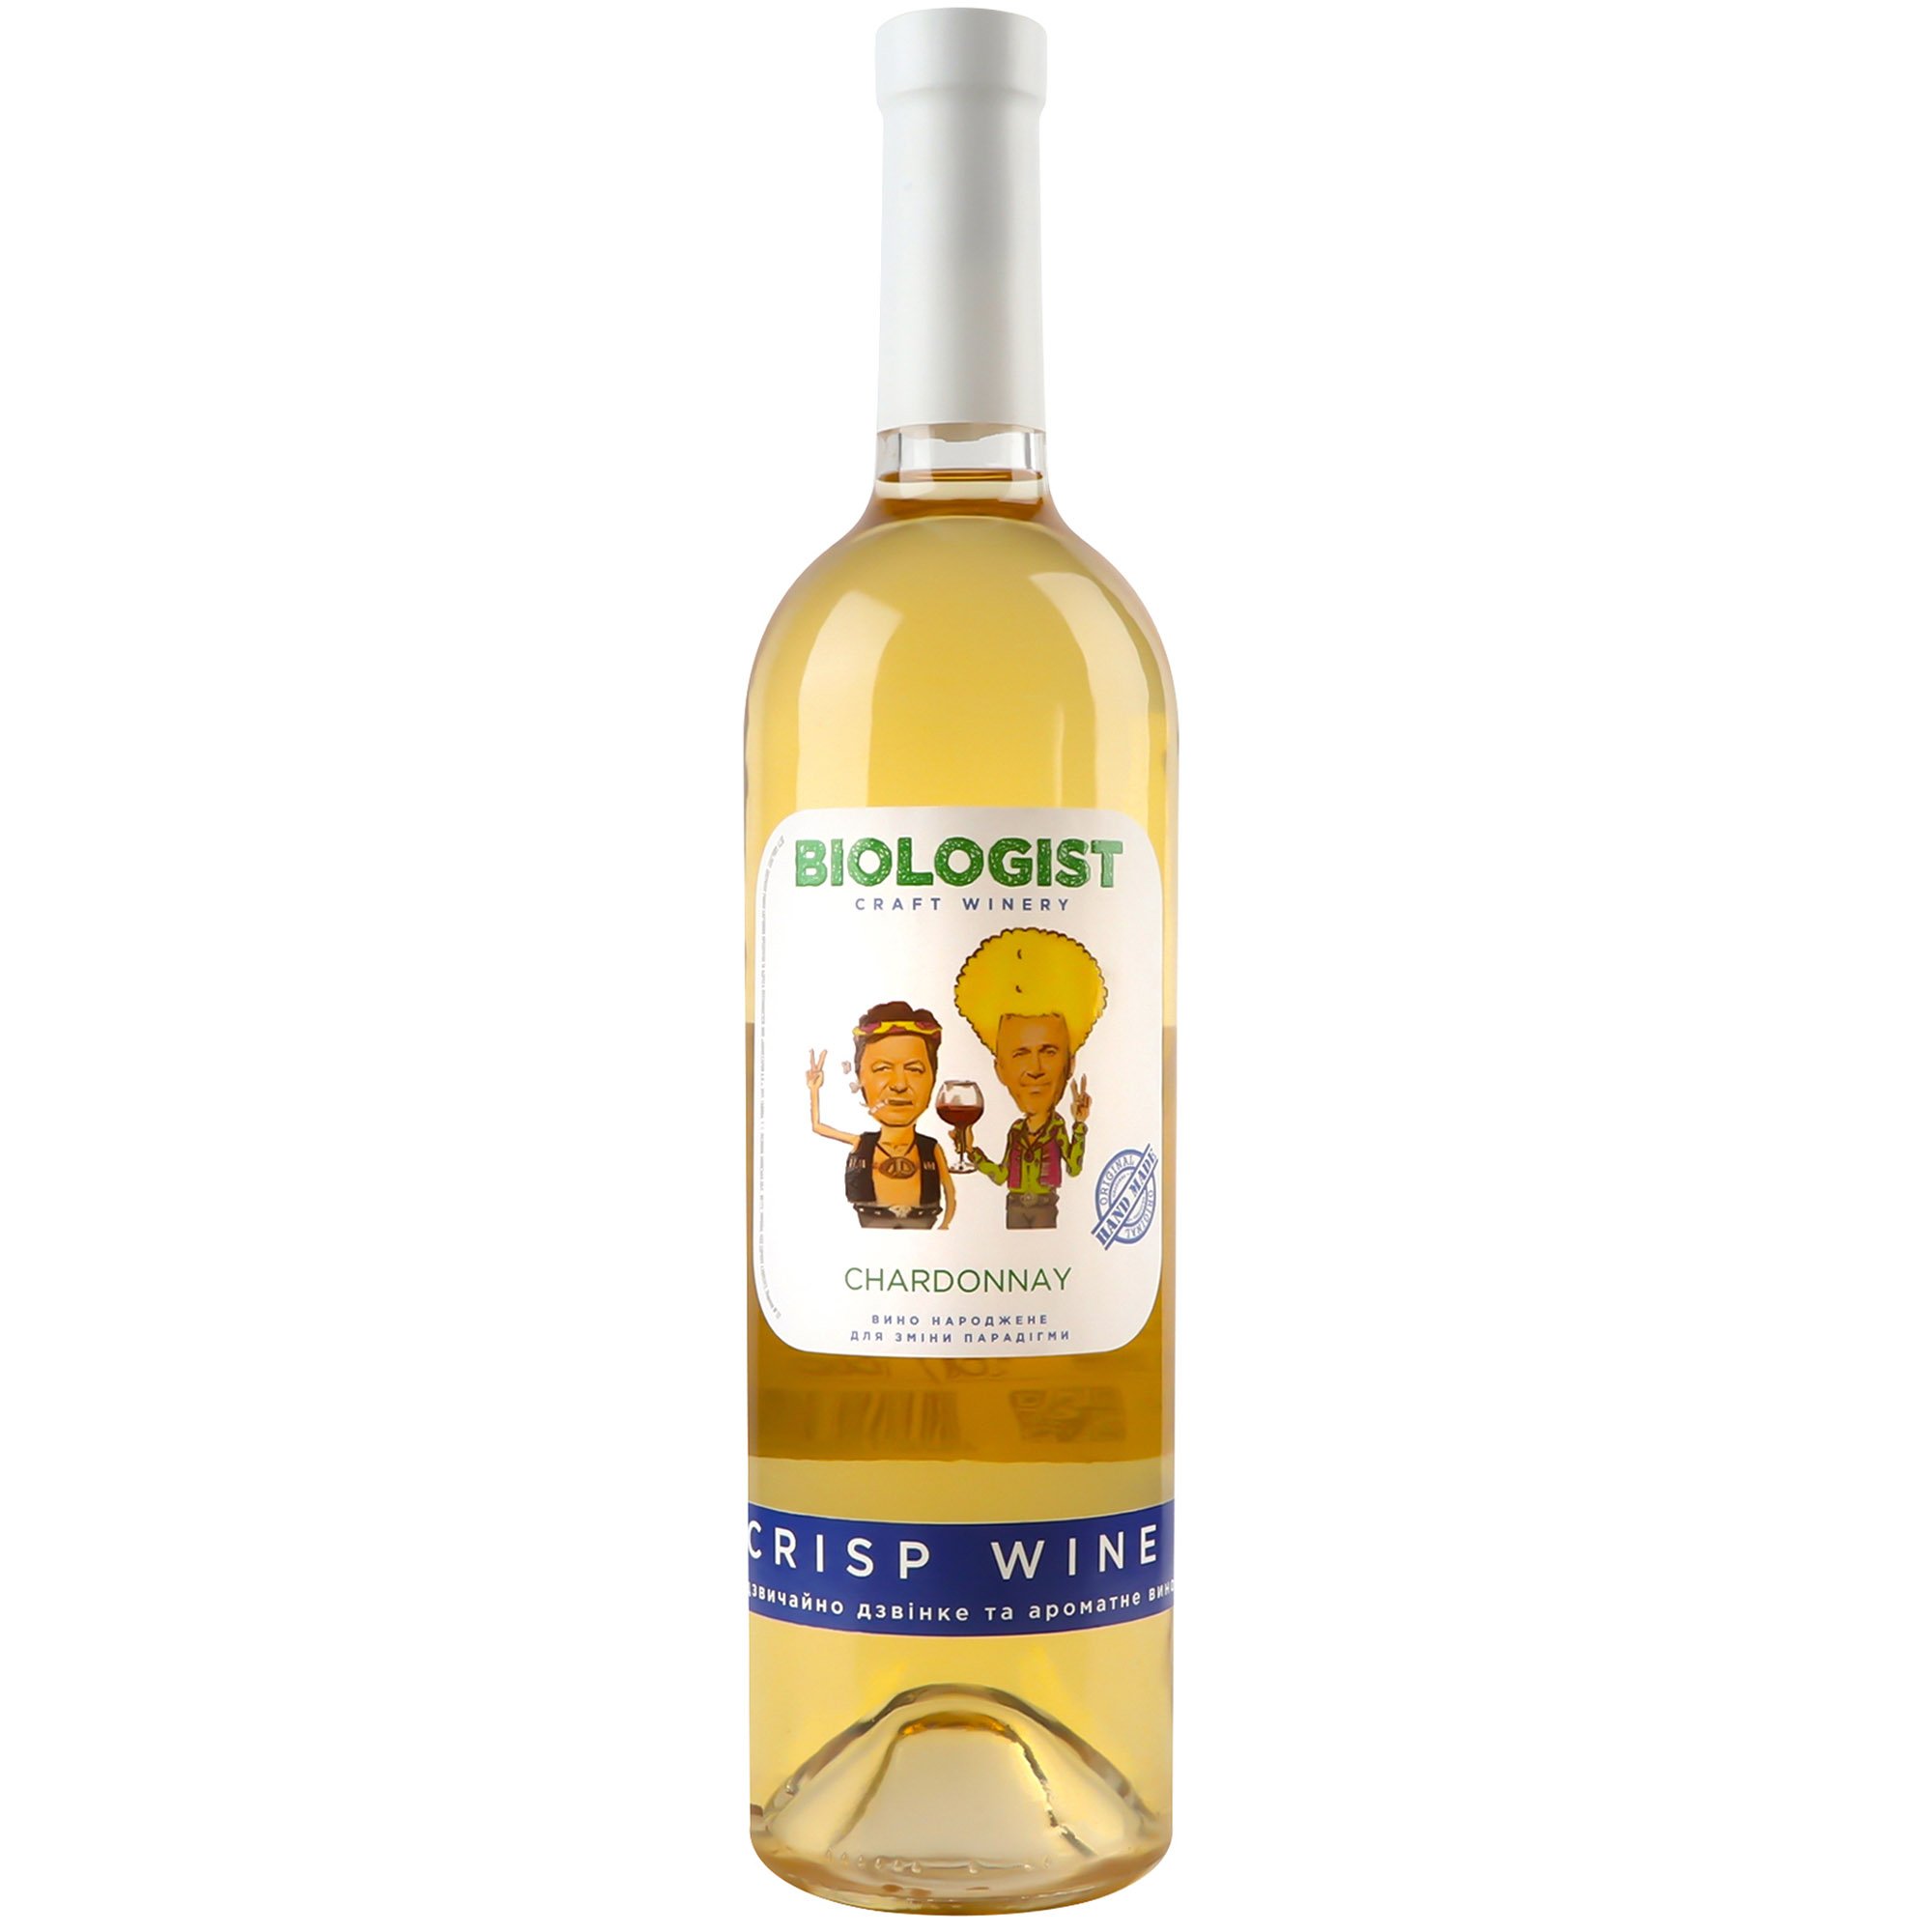 Вино Biologist Chardonnay Crisp Wine белое сухое 0.75 л - фото 1